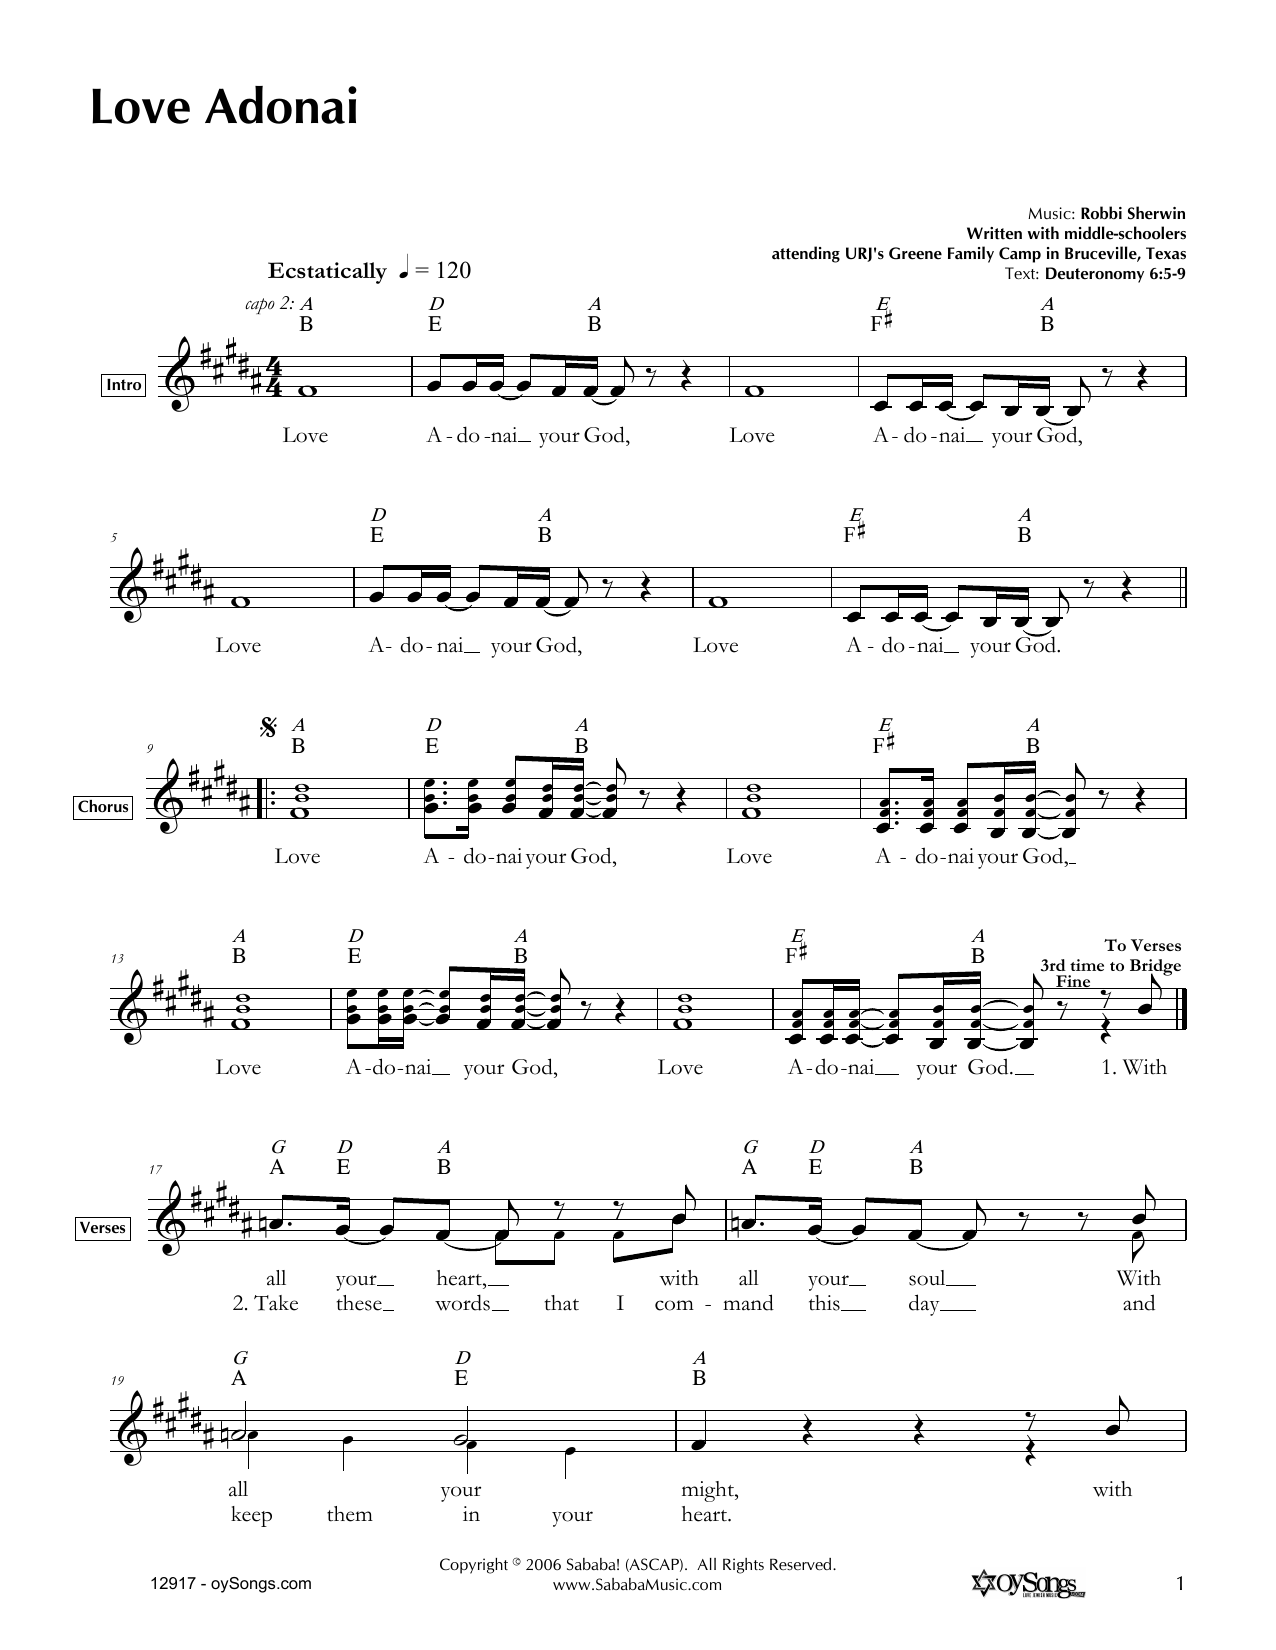 Robbi Sherwin Love Adonai Sheet Music Notes & Chords for Melody Line, Lyrics & Chords - Download or Print PDF